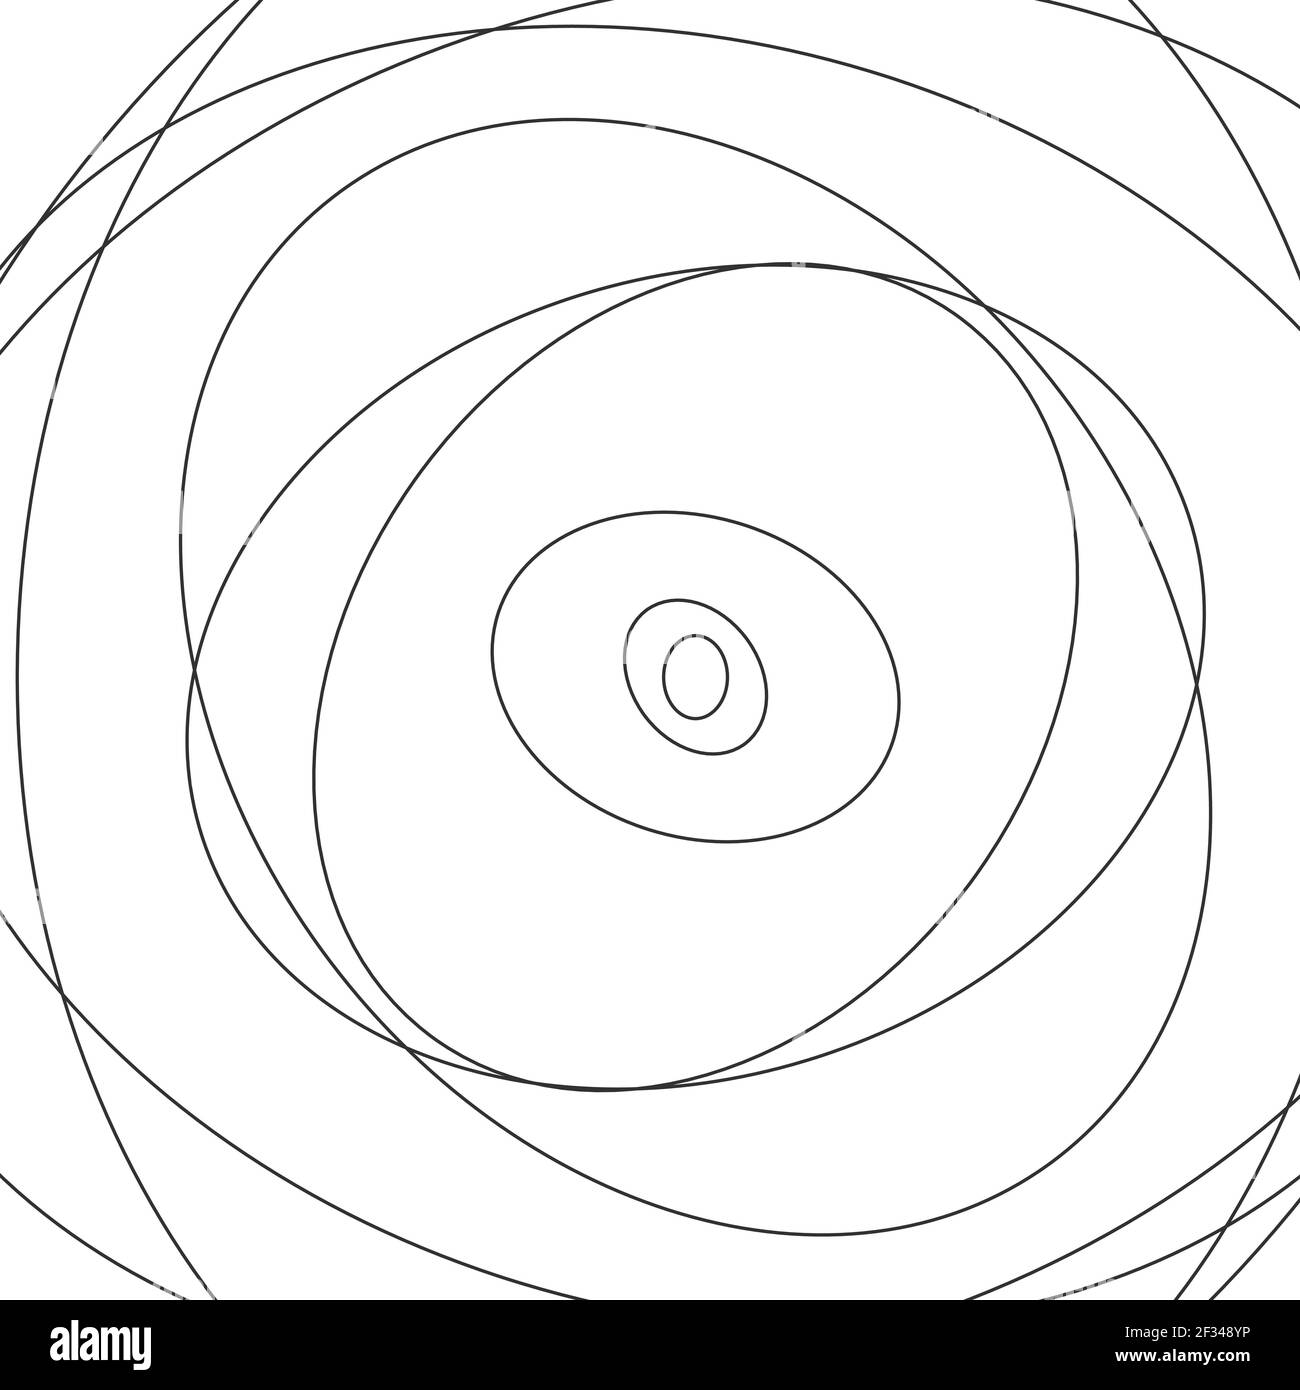 Vecteur abstrait cercle chaotique lignes d'esquisse arrière-groupe. Forme ronde noire. Forme torsadée. Vecteur de brut Illustration de Vecteur